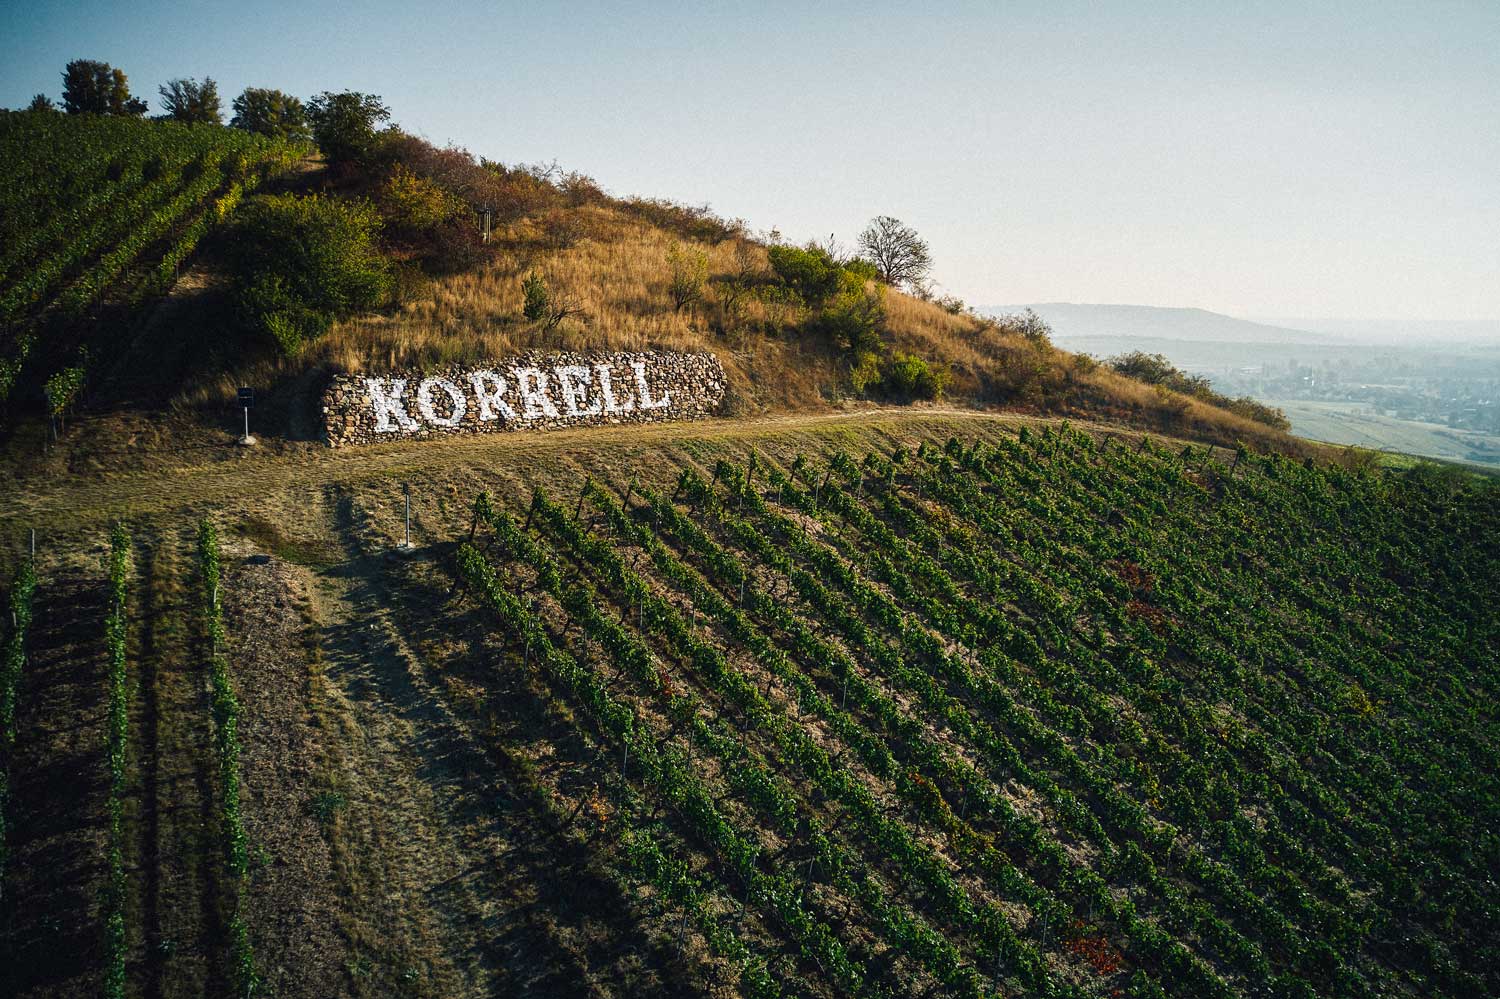 Weinberge vom Weingut Korrell mit Name in Stein